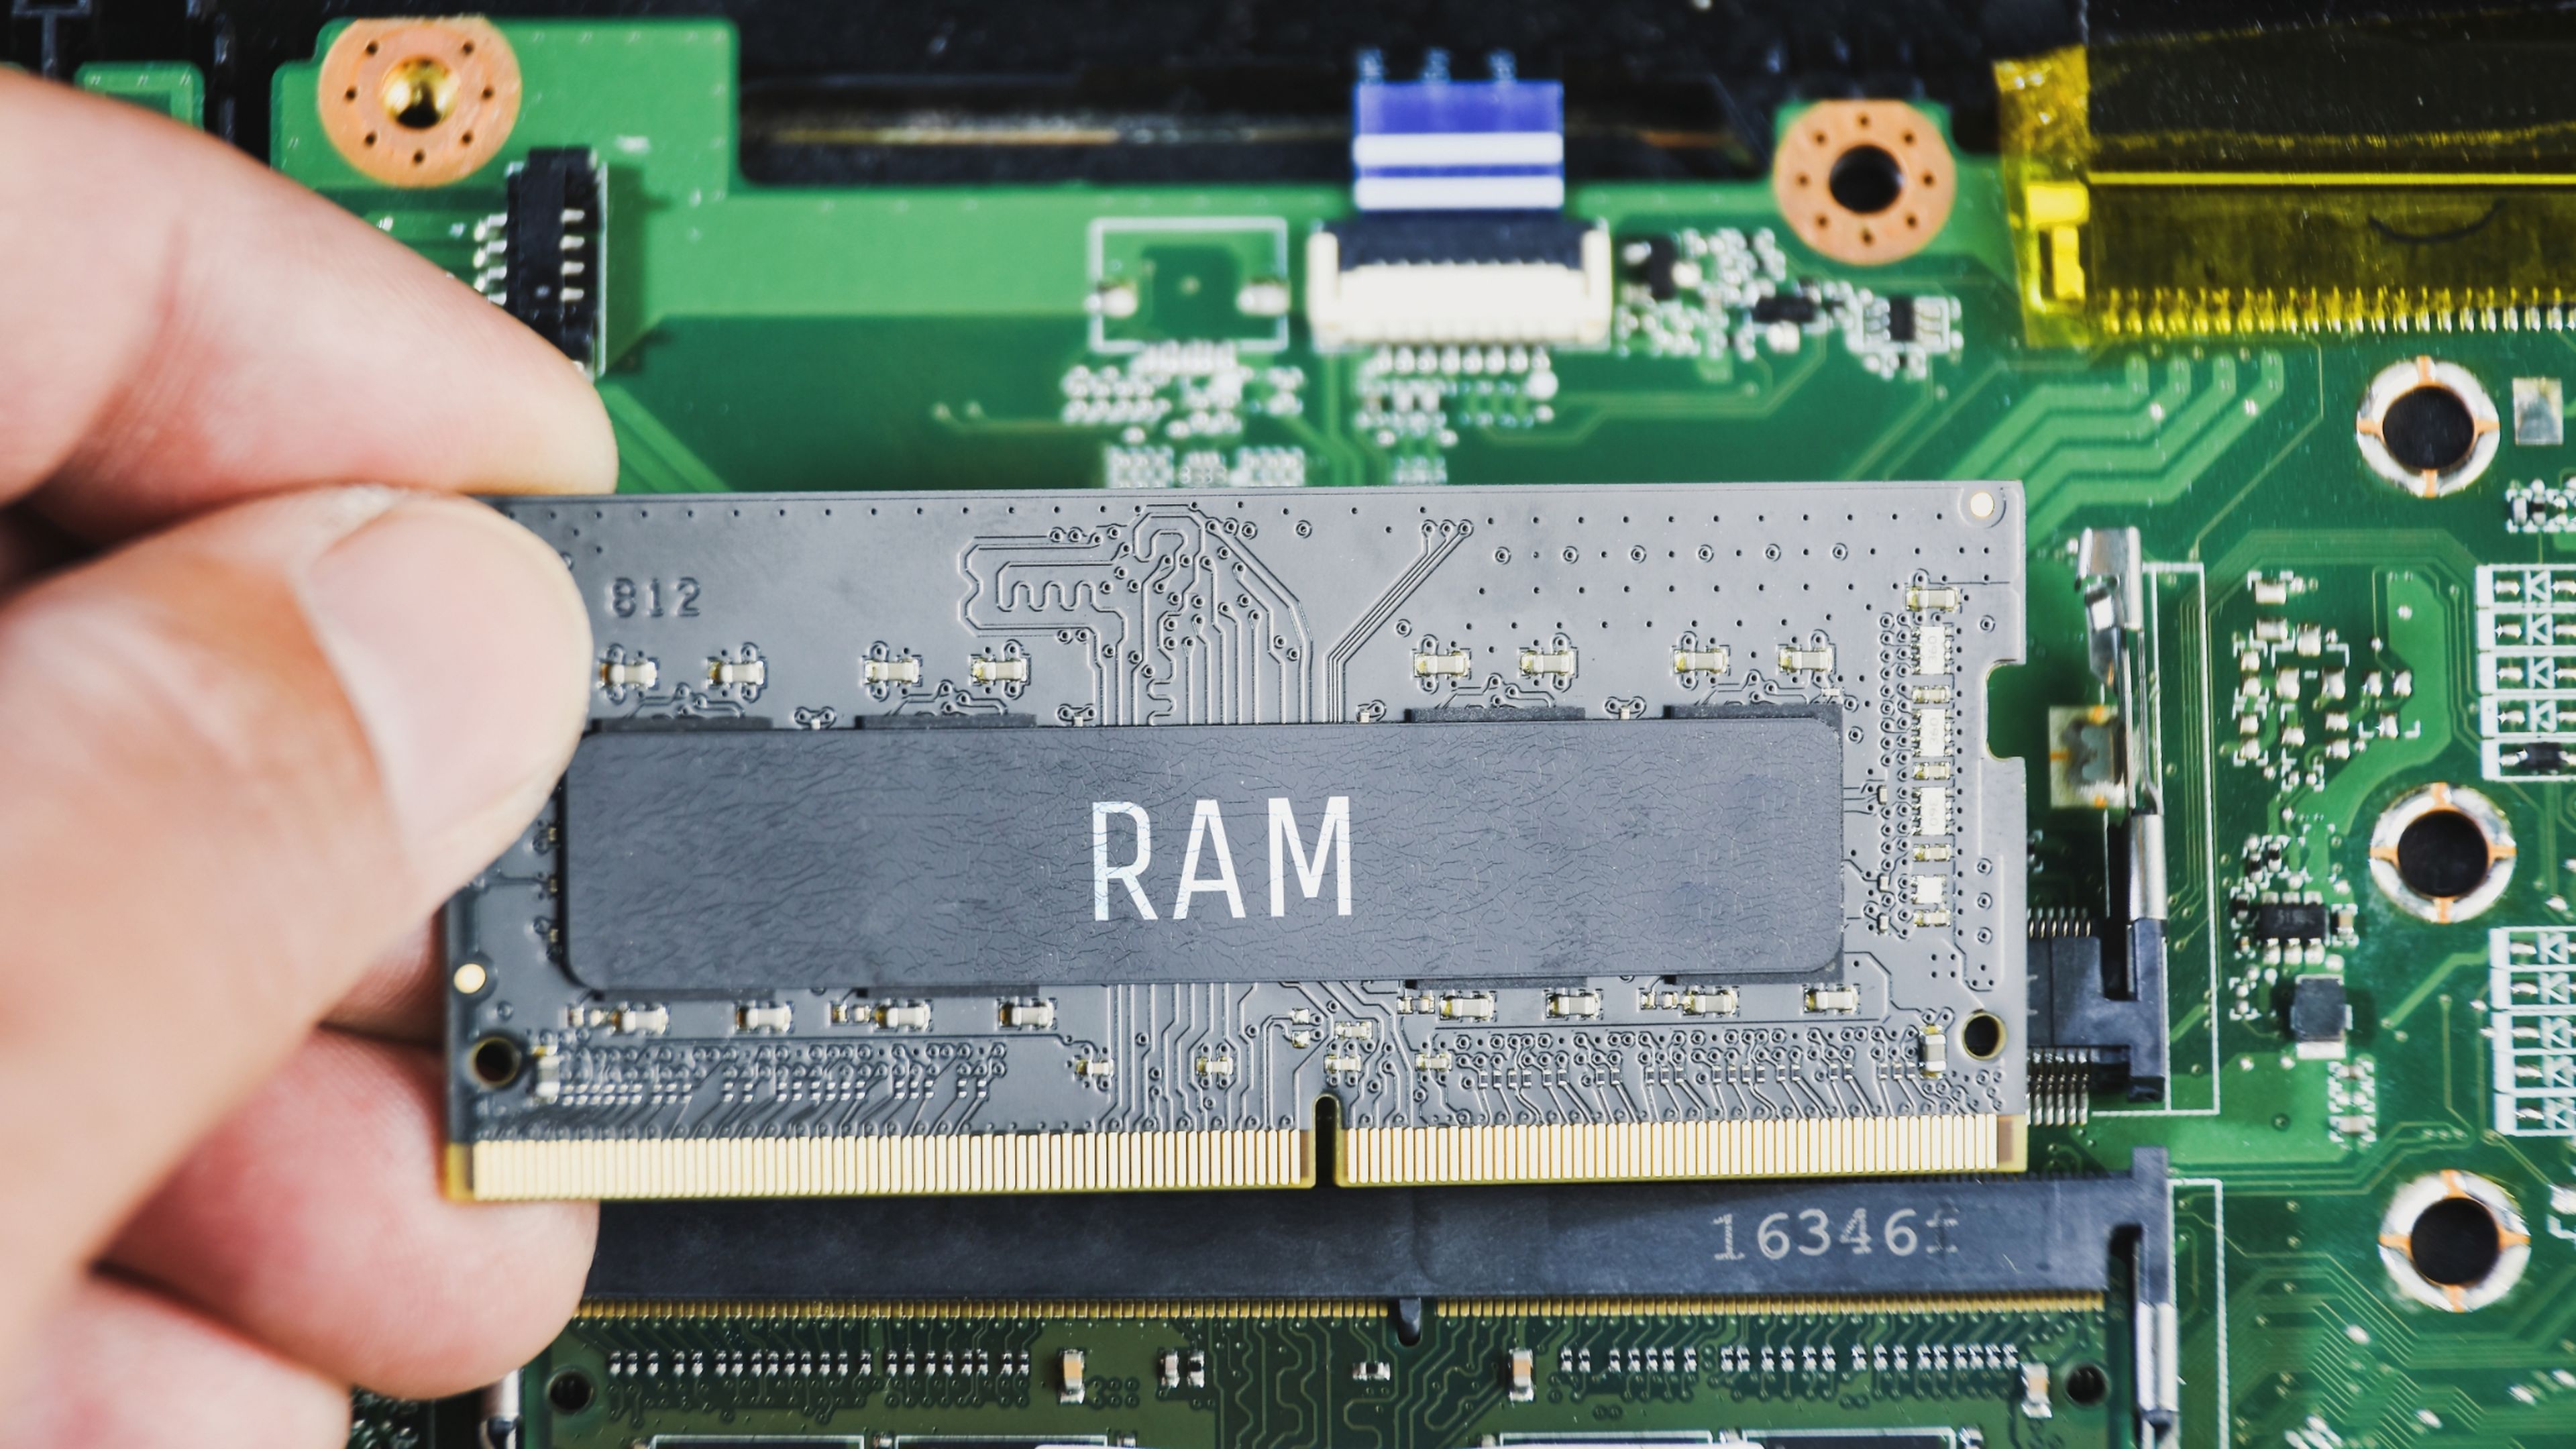 Cuánto tiempo dura una memoria RAM y cómo puedes prolongar su vida útil